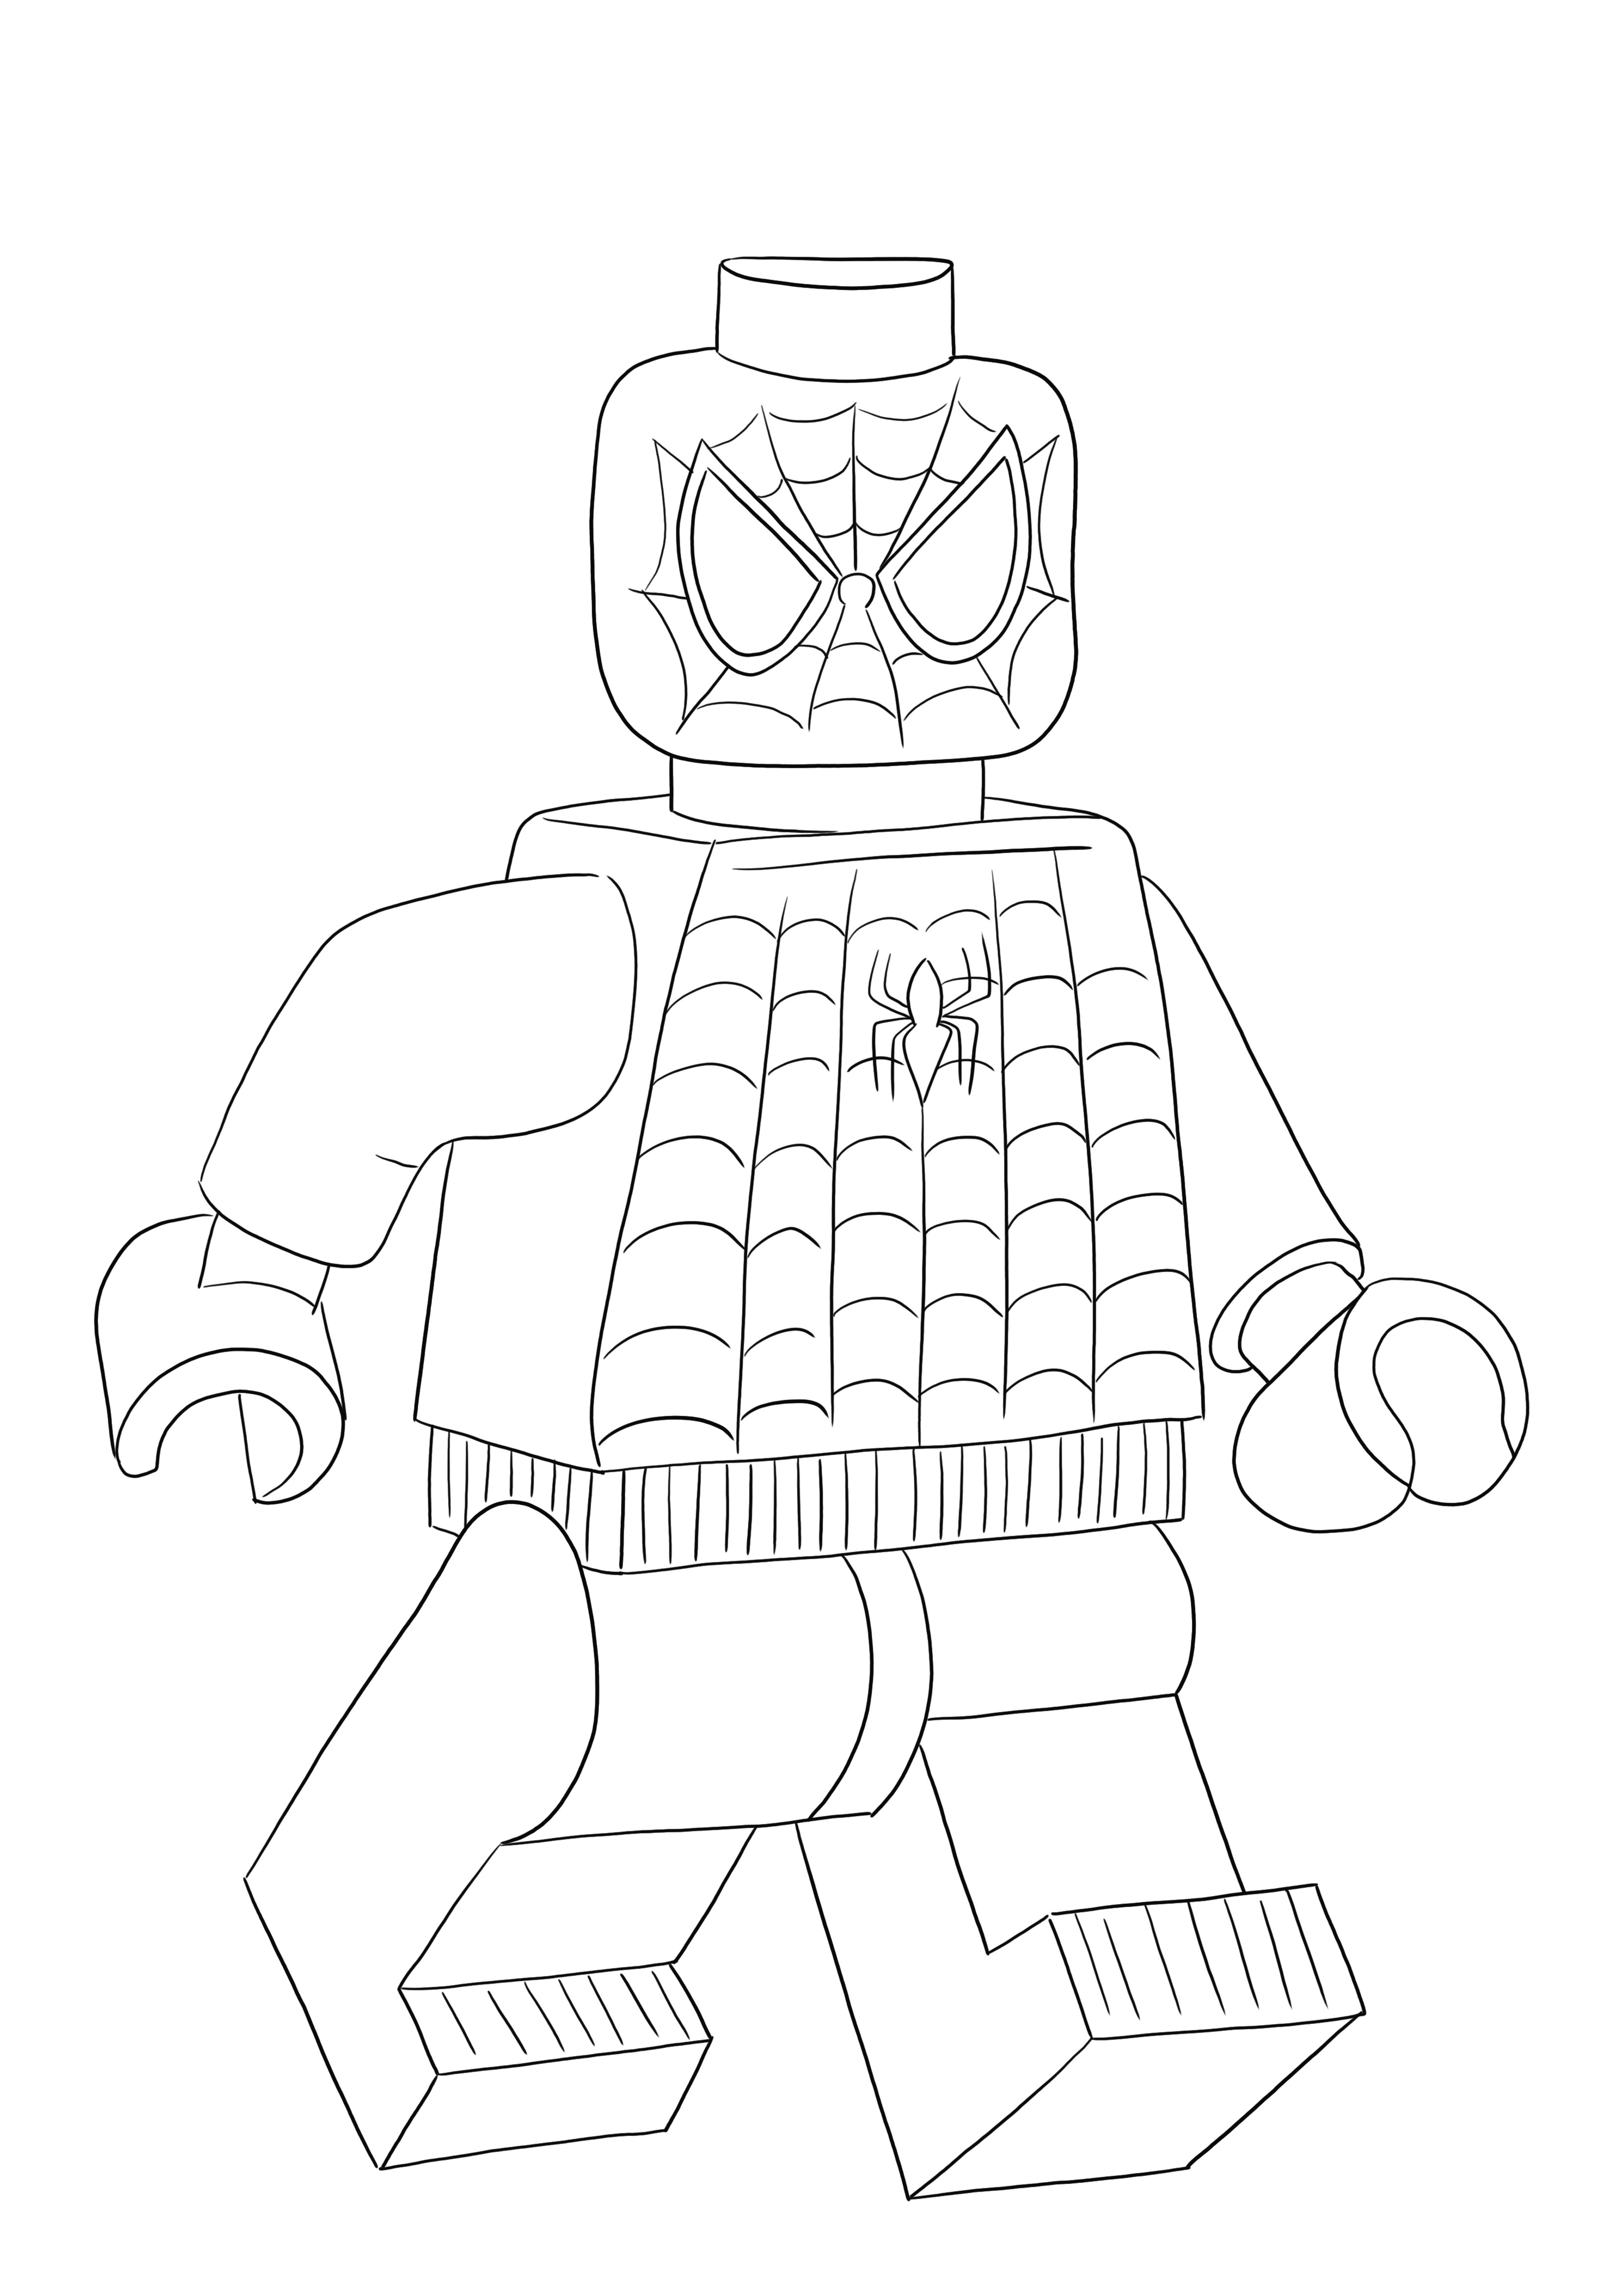 Lego Spiderman freebie está listo para ser coloreado y divertirse para todos los amantes de Lego